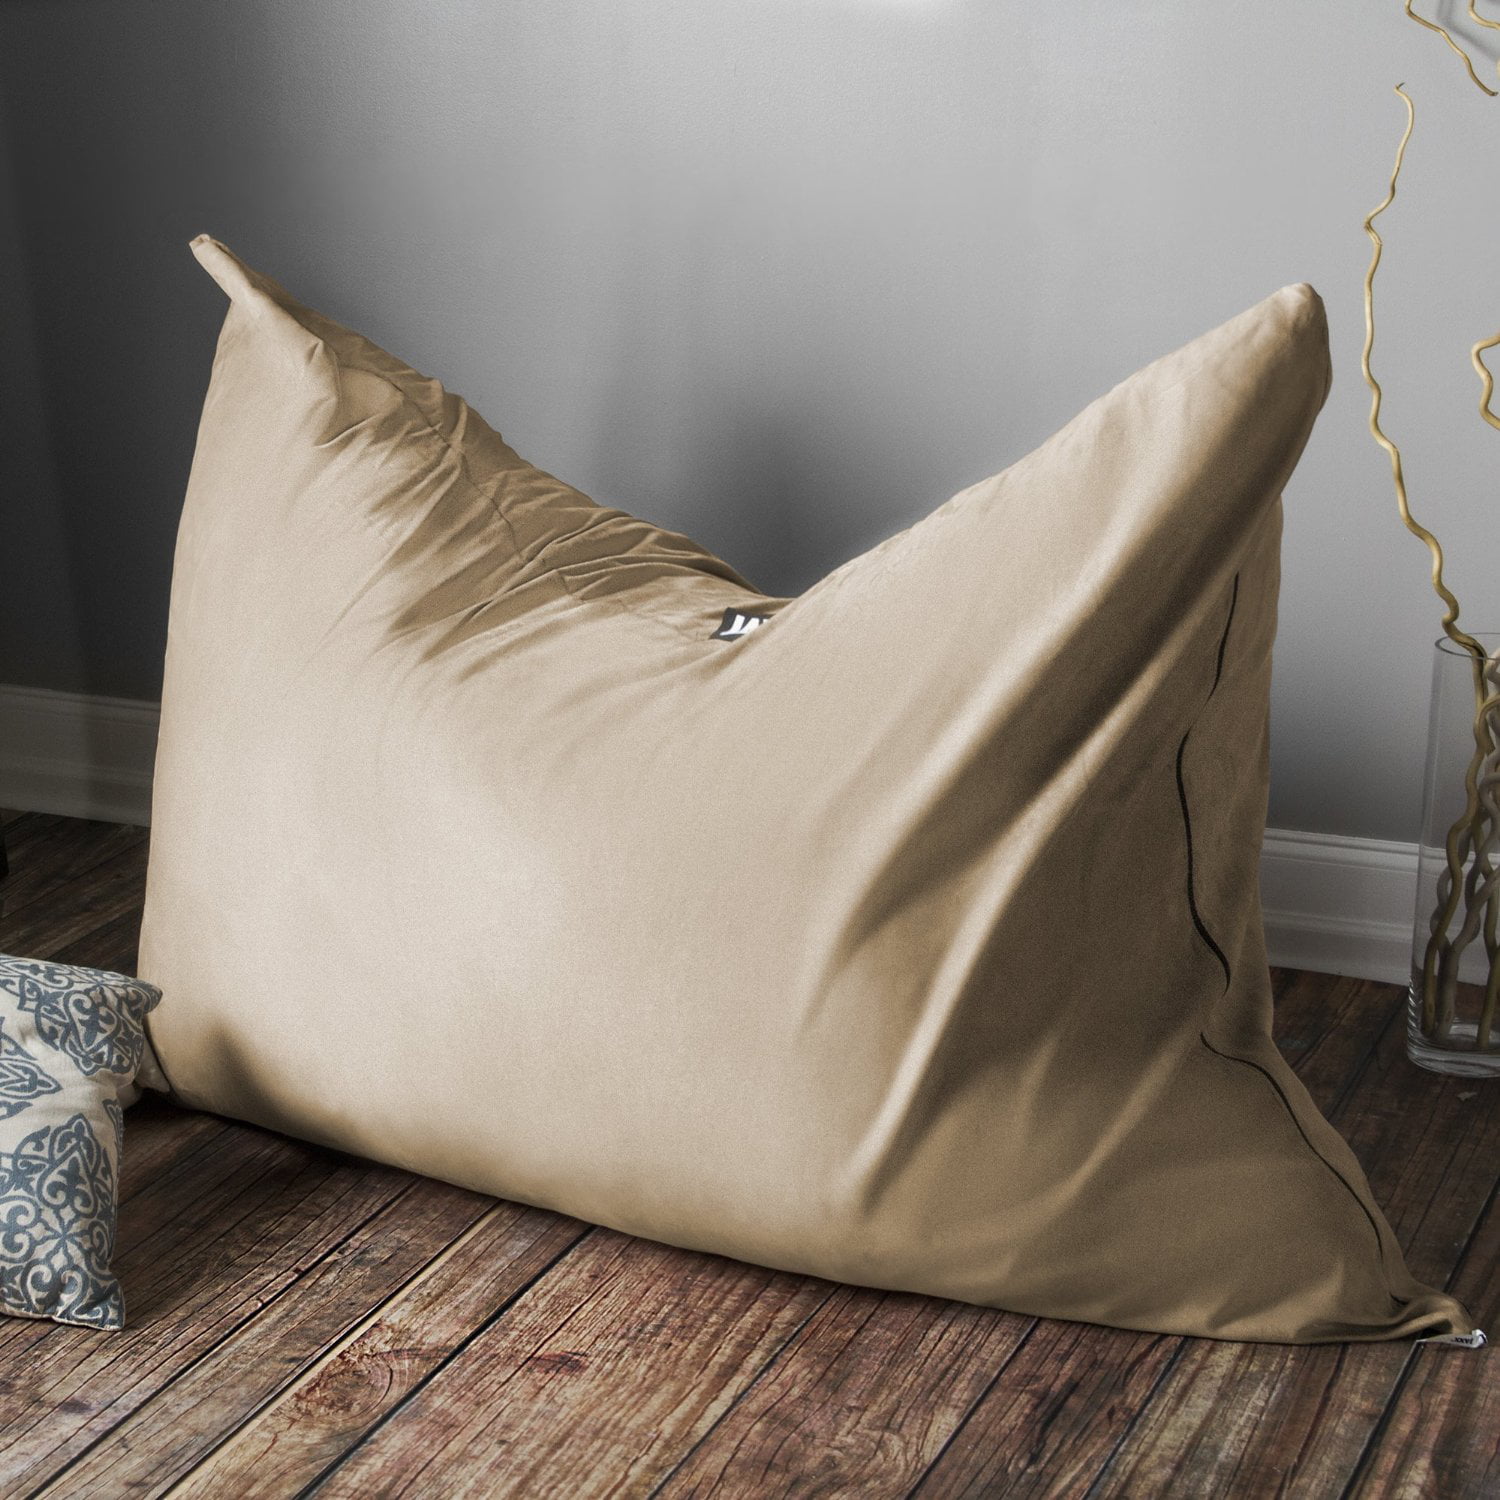 Jaxx 5.5 ft Pillow Saxx Bean Bag Pillow Navy